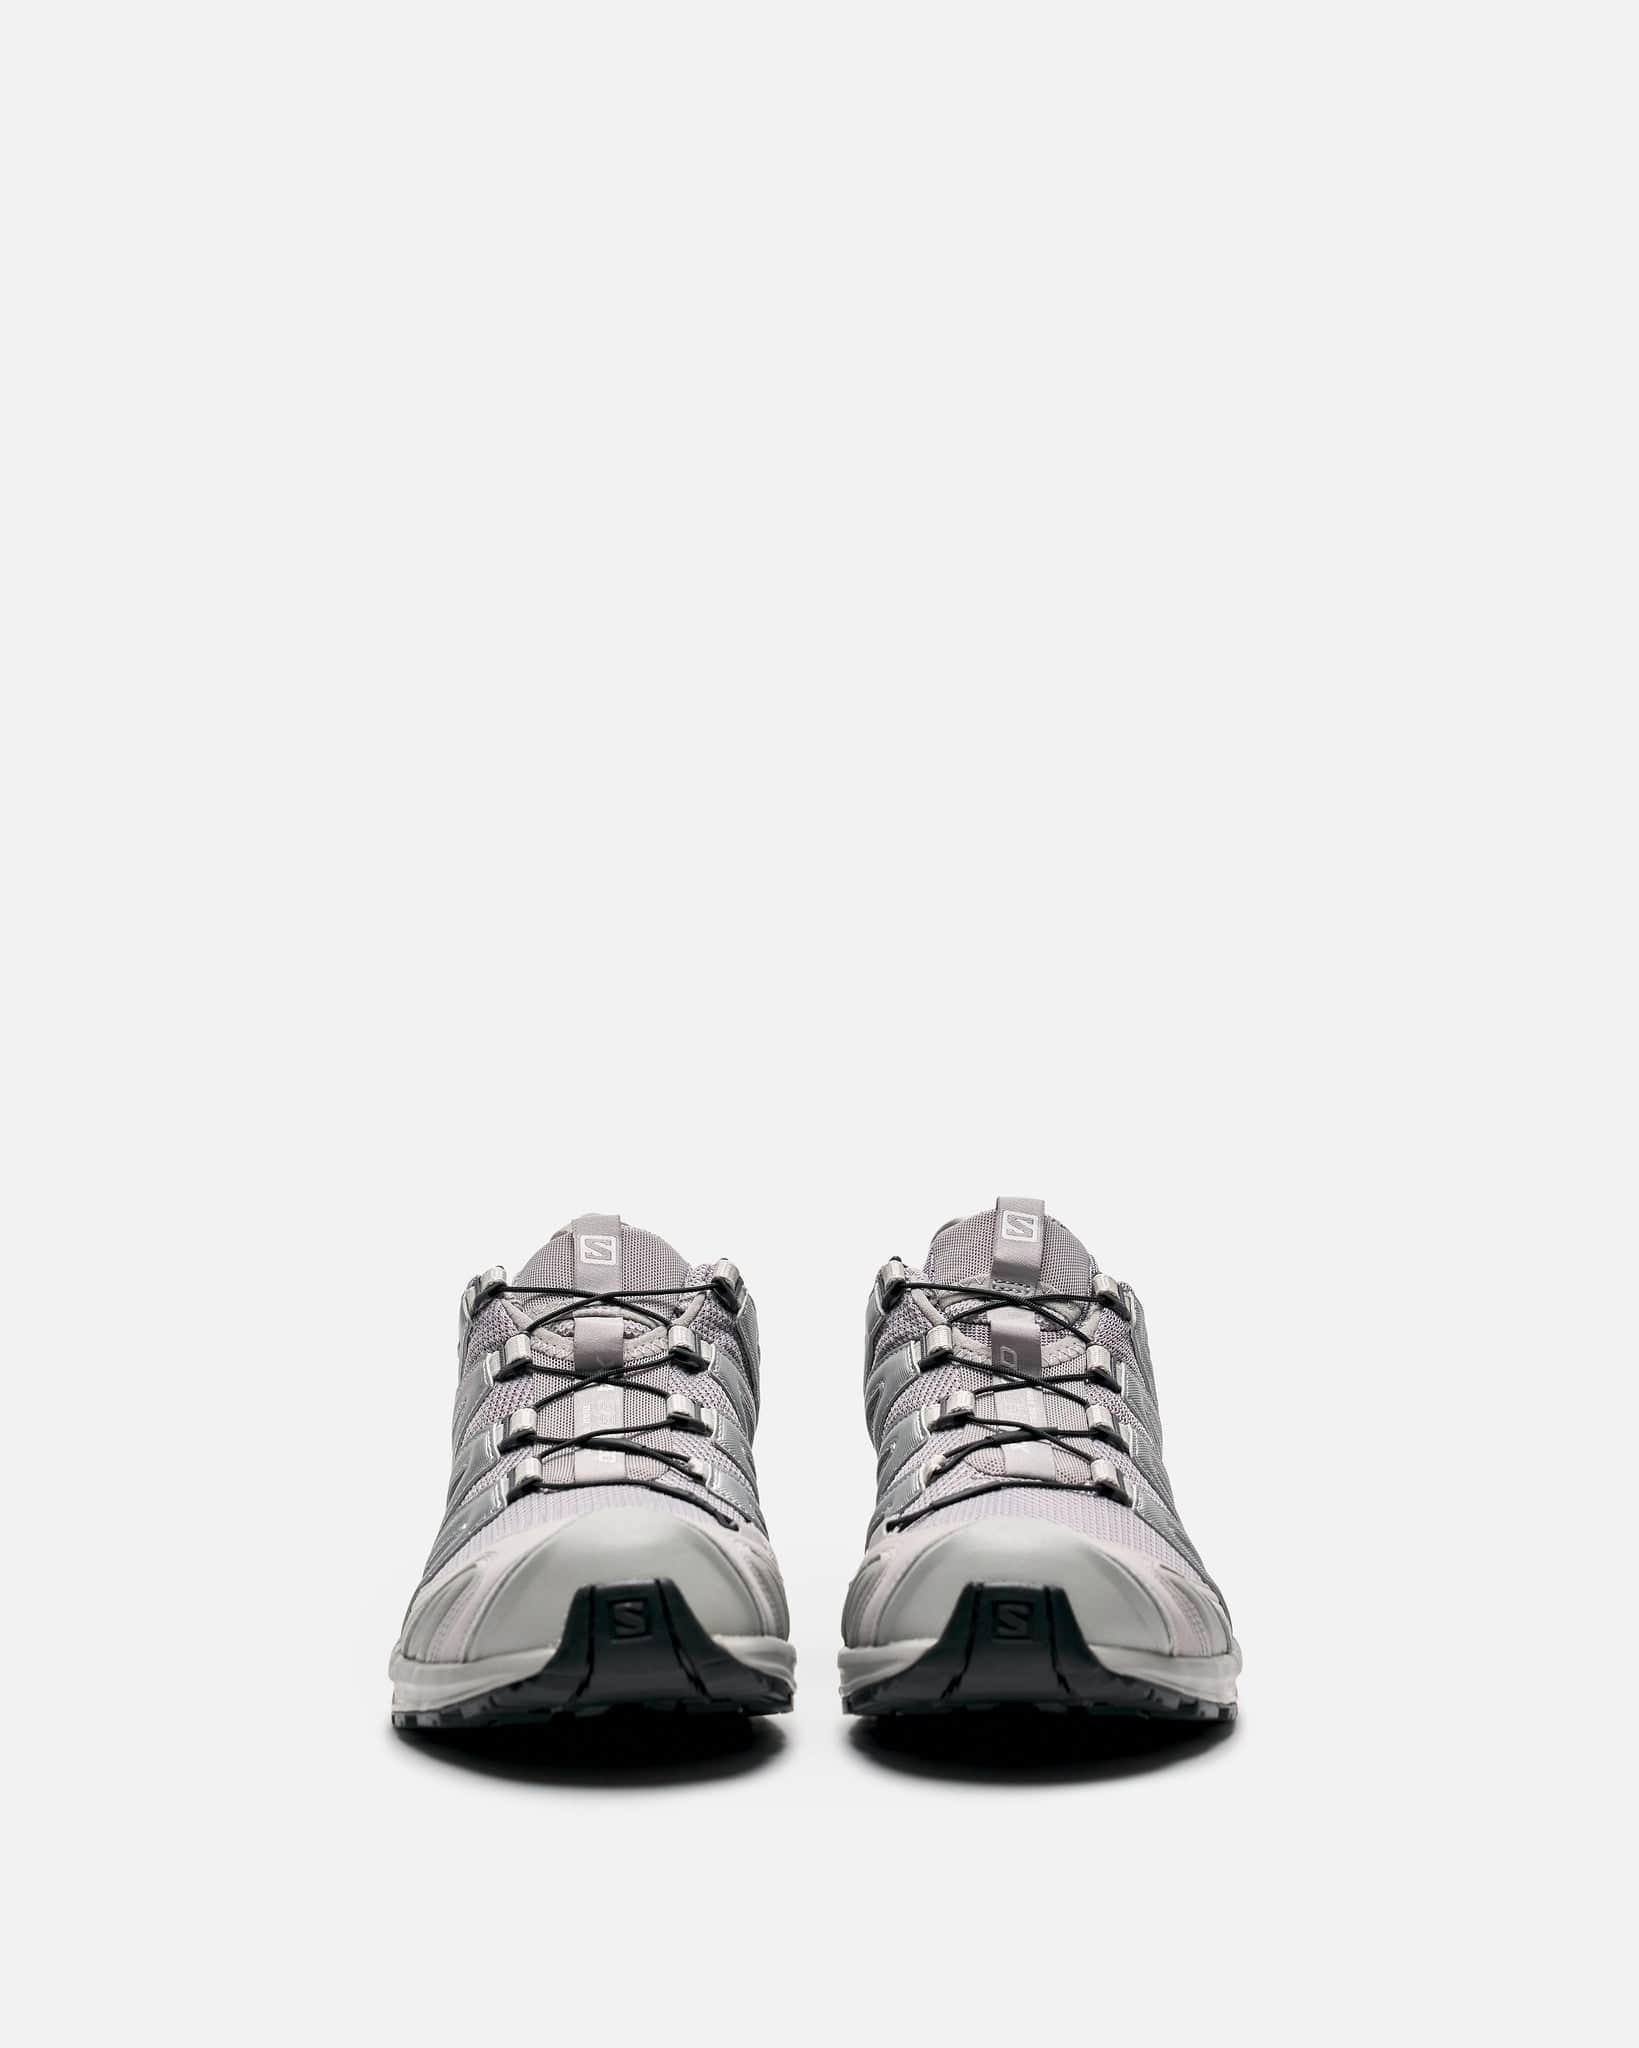 Salomon Men's Sneakers XA Pro 3D in Alloy/Silver